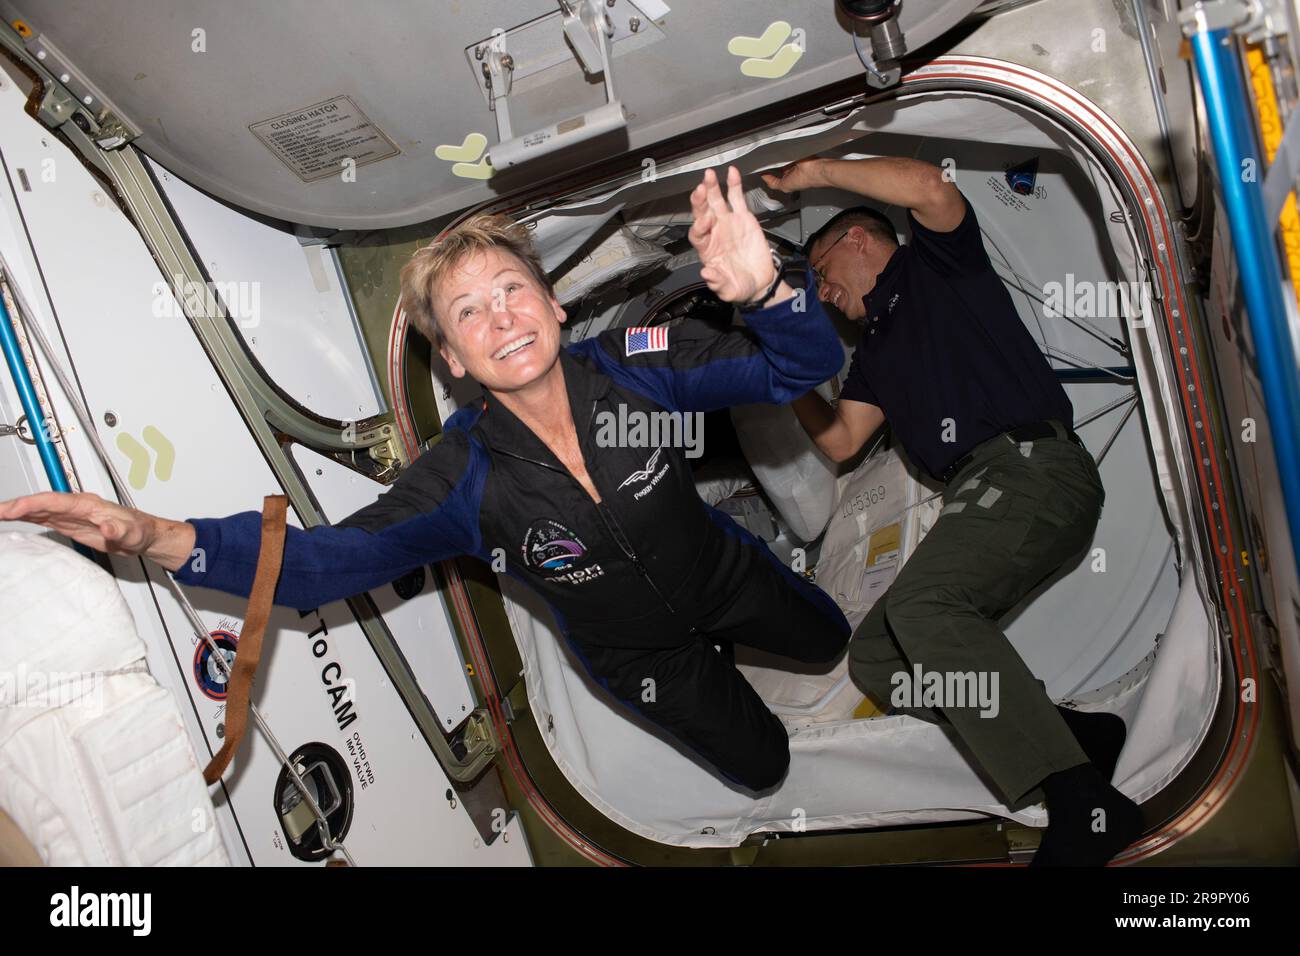 Arrivo dei membri del Dragon Crew AX-2. Iss069e013989 (22 maggio 2023) - l'astronauta privato Axiom Space e il comandante della missione Axiom 2 Peggy Whitson entrano nella stazione spaziale Internazionale poco dopo che i portelli sono stati aperti tra l'avamposto orbitale e la navicella spaziale SpaceX Dragon Freedom. L'astronauta della NASA e l'ingegnere di volo della Expedition 69 Frank Rubio la accolgono all'interno del vestibolo tra il modulo Harmony della stazione e Dragon. Foto Stock